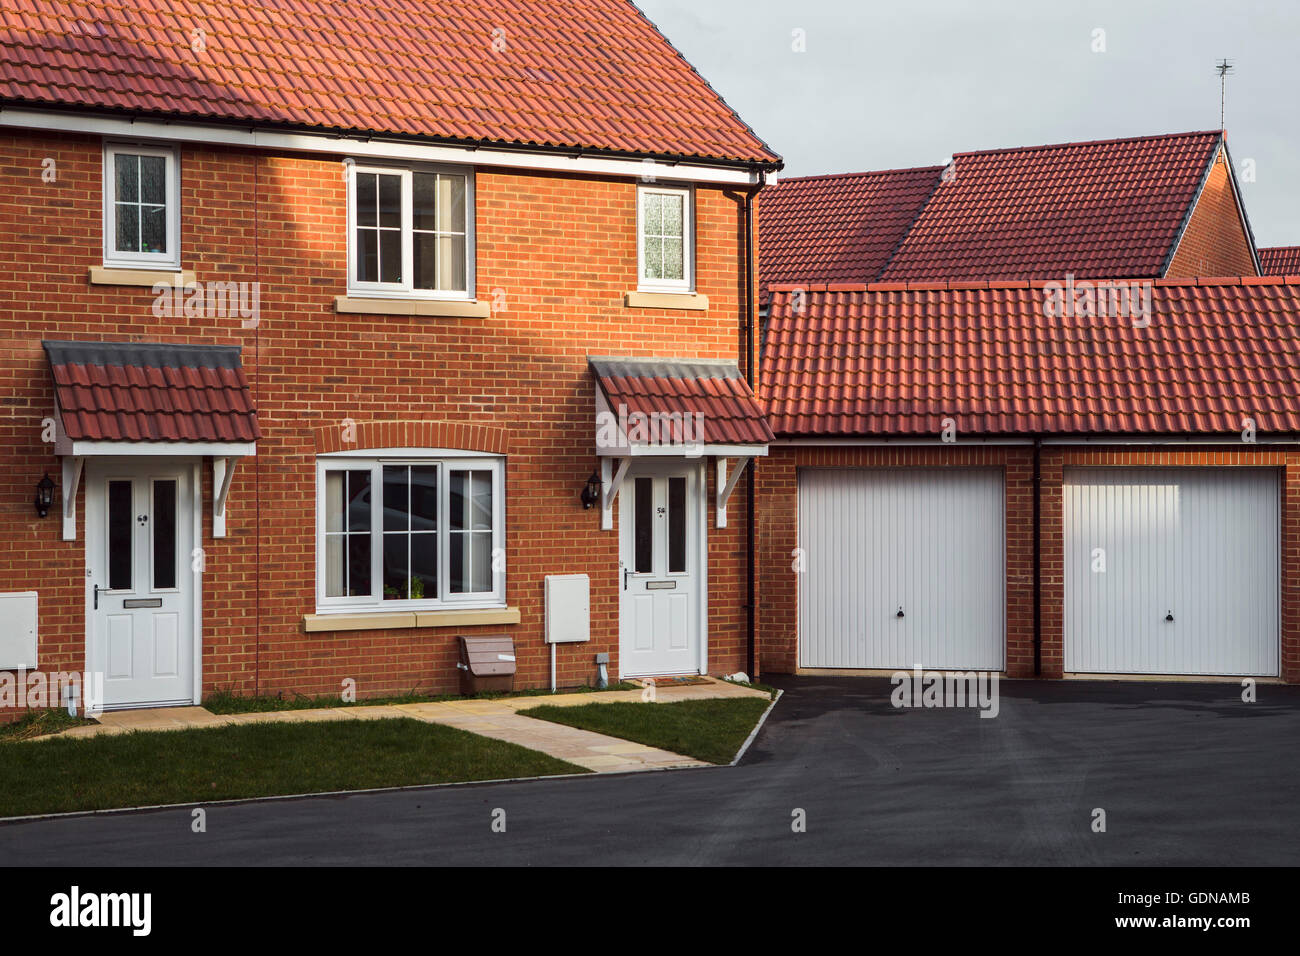 Suburban landscape, Swindon, UK with red brick house on ahousing estate. Stock Photo